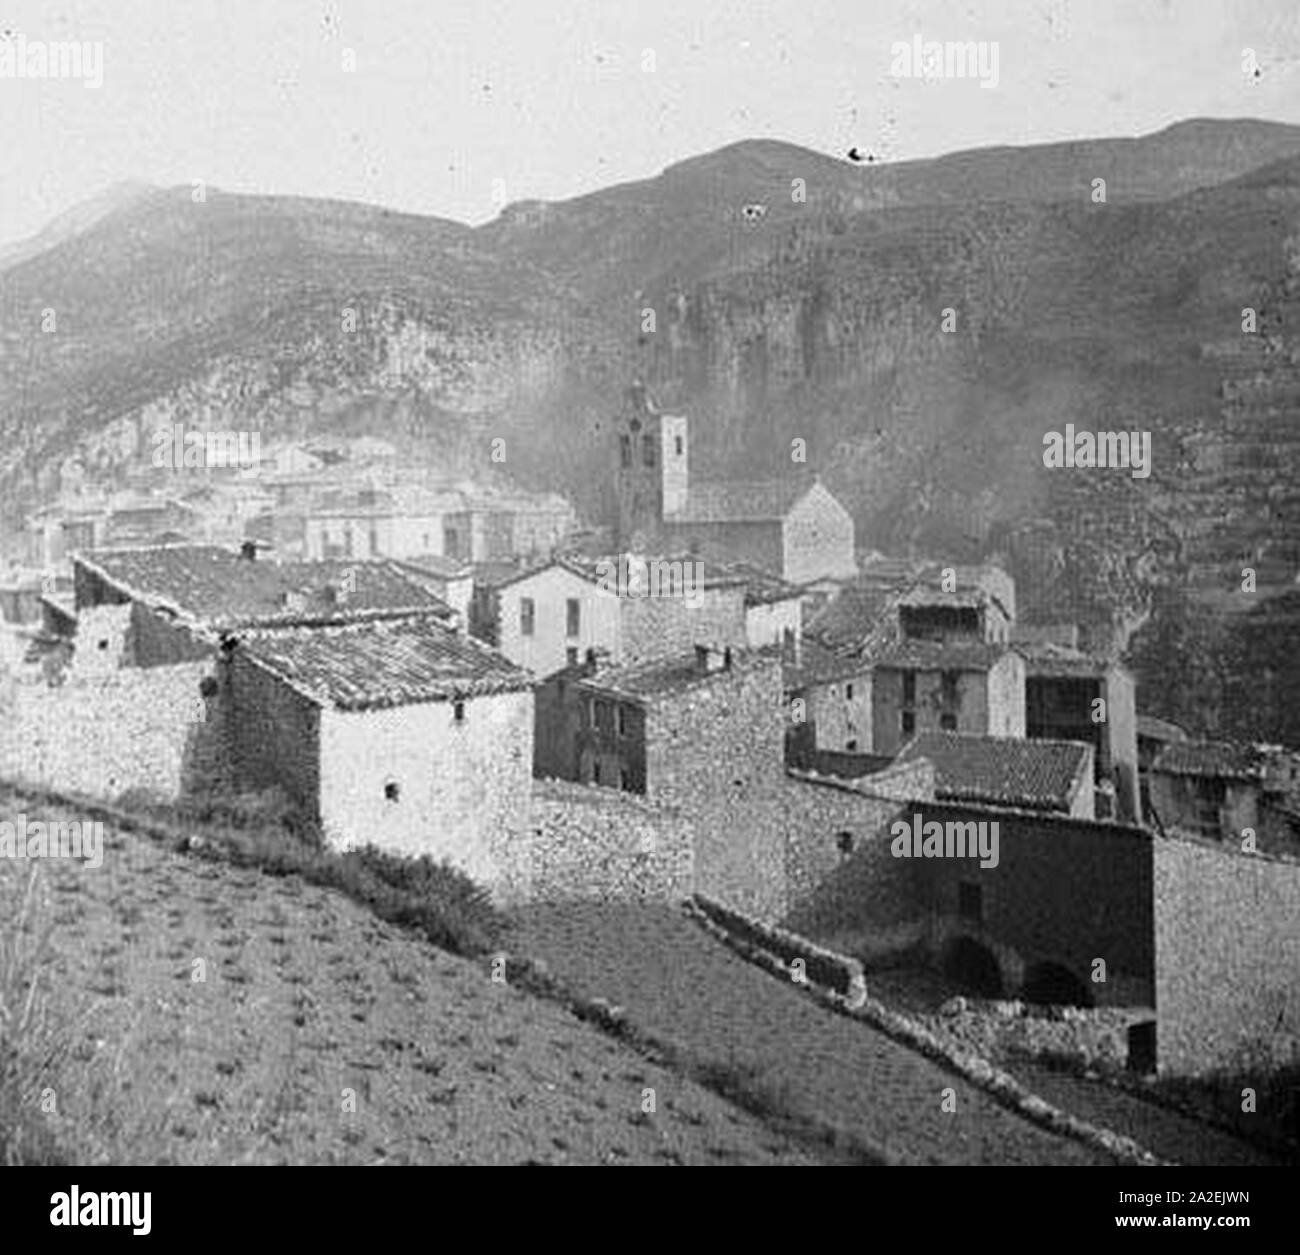 El poble de Castellar de n'Hug (cropped). Stock Photo